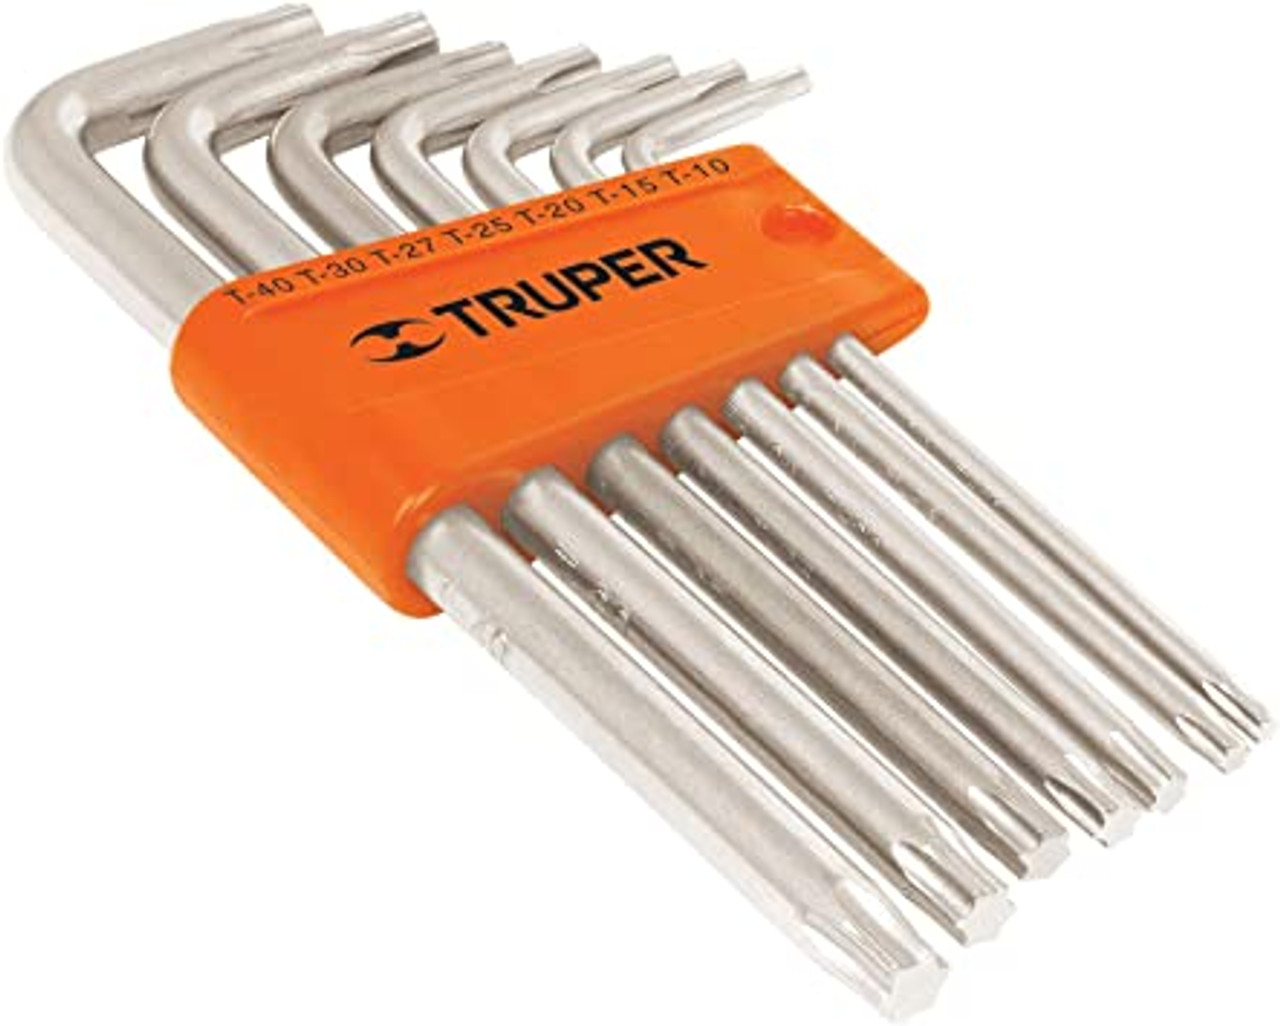 Truper 9-Pc Long Arm Torx Key Wrench Set,Plastic Holder, Torx L-key Long Arm Set 2 Pack#15553